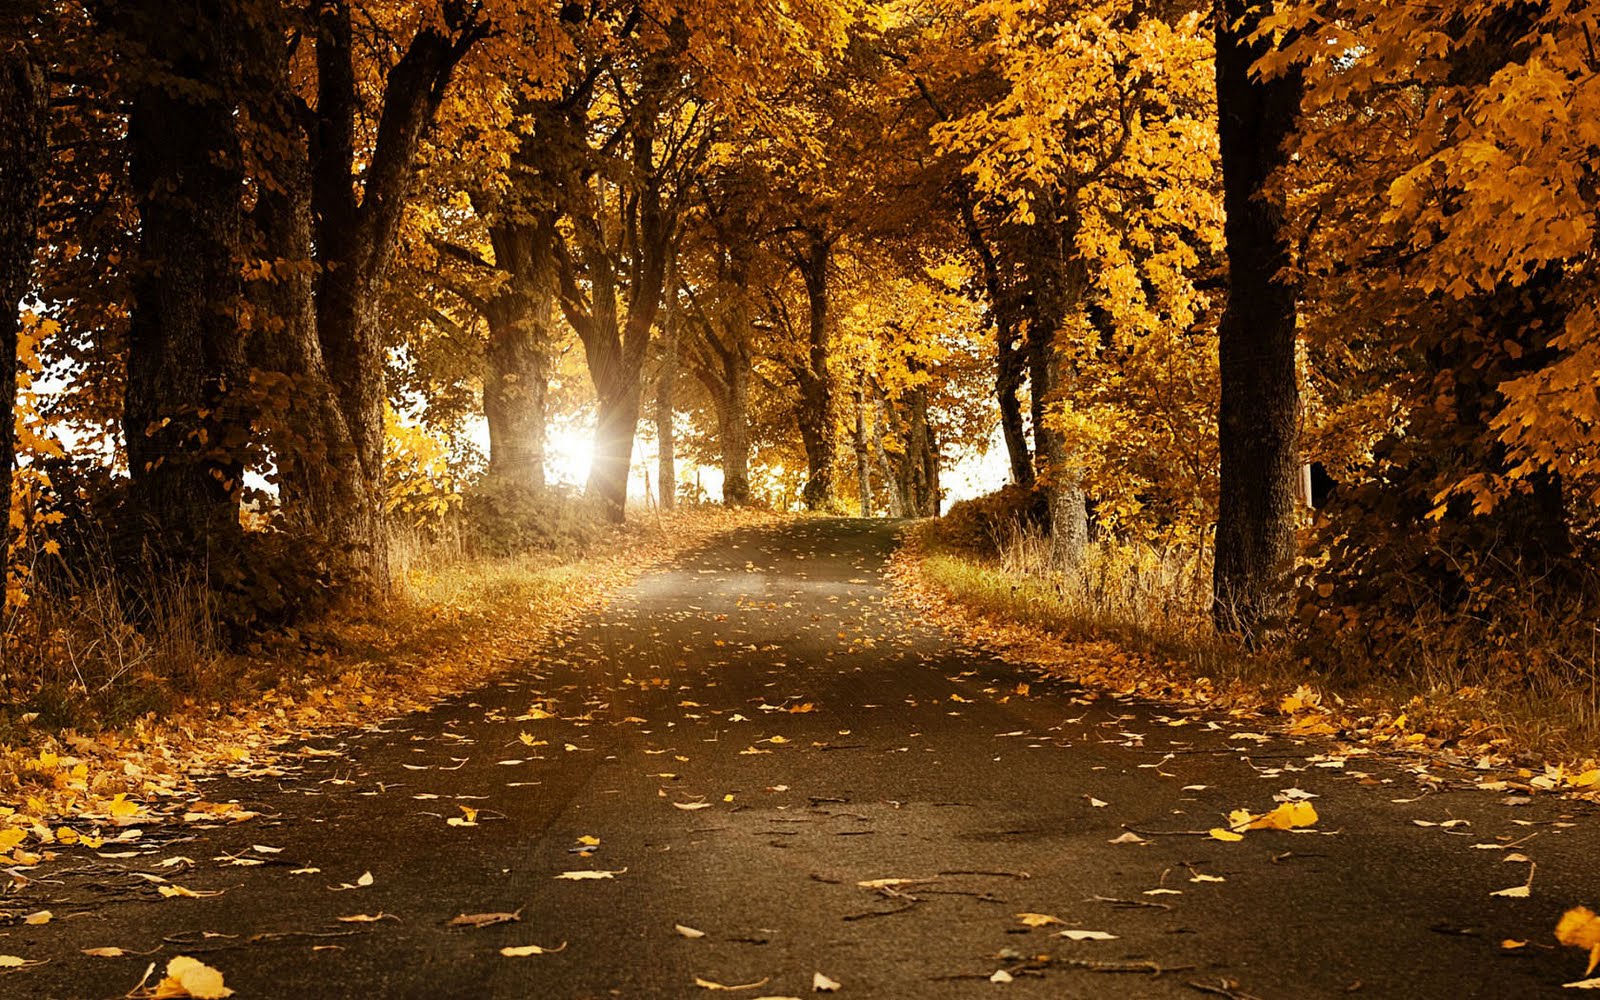 Wallpaper met een brede weg door het bos tijdens de herfst met bomen